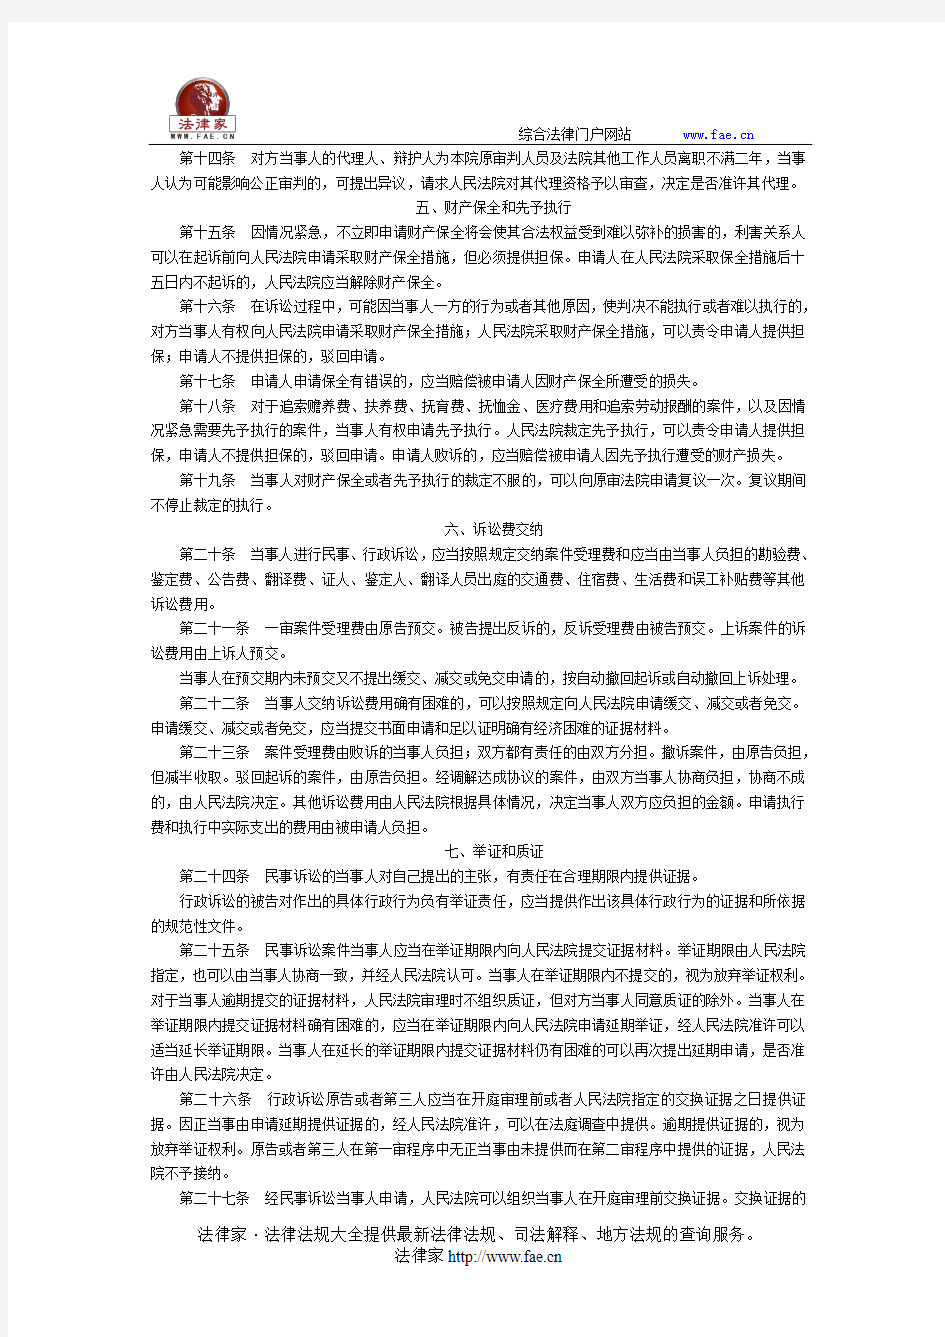 北京市法院民事、行政诉讼指南-地方司法规范